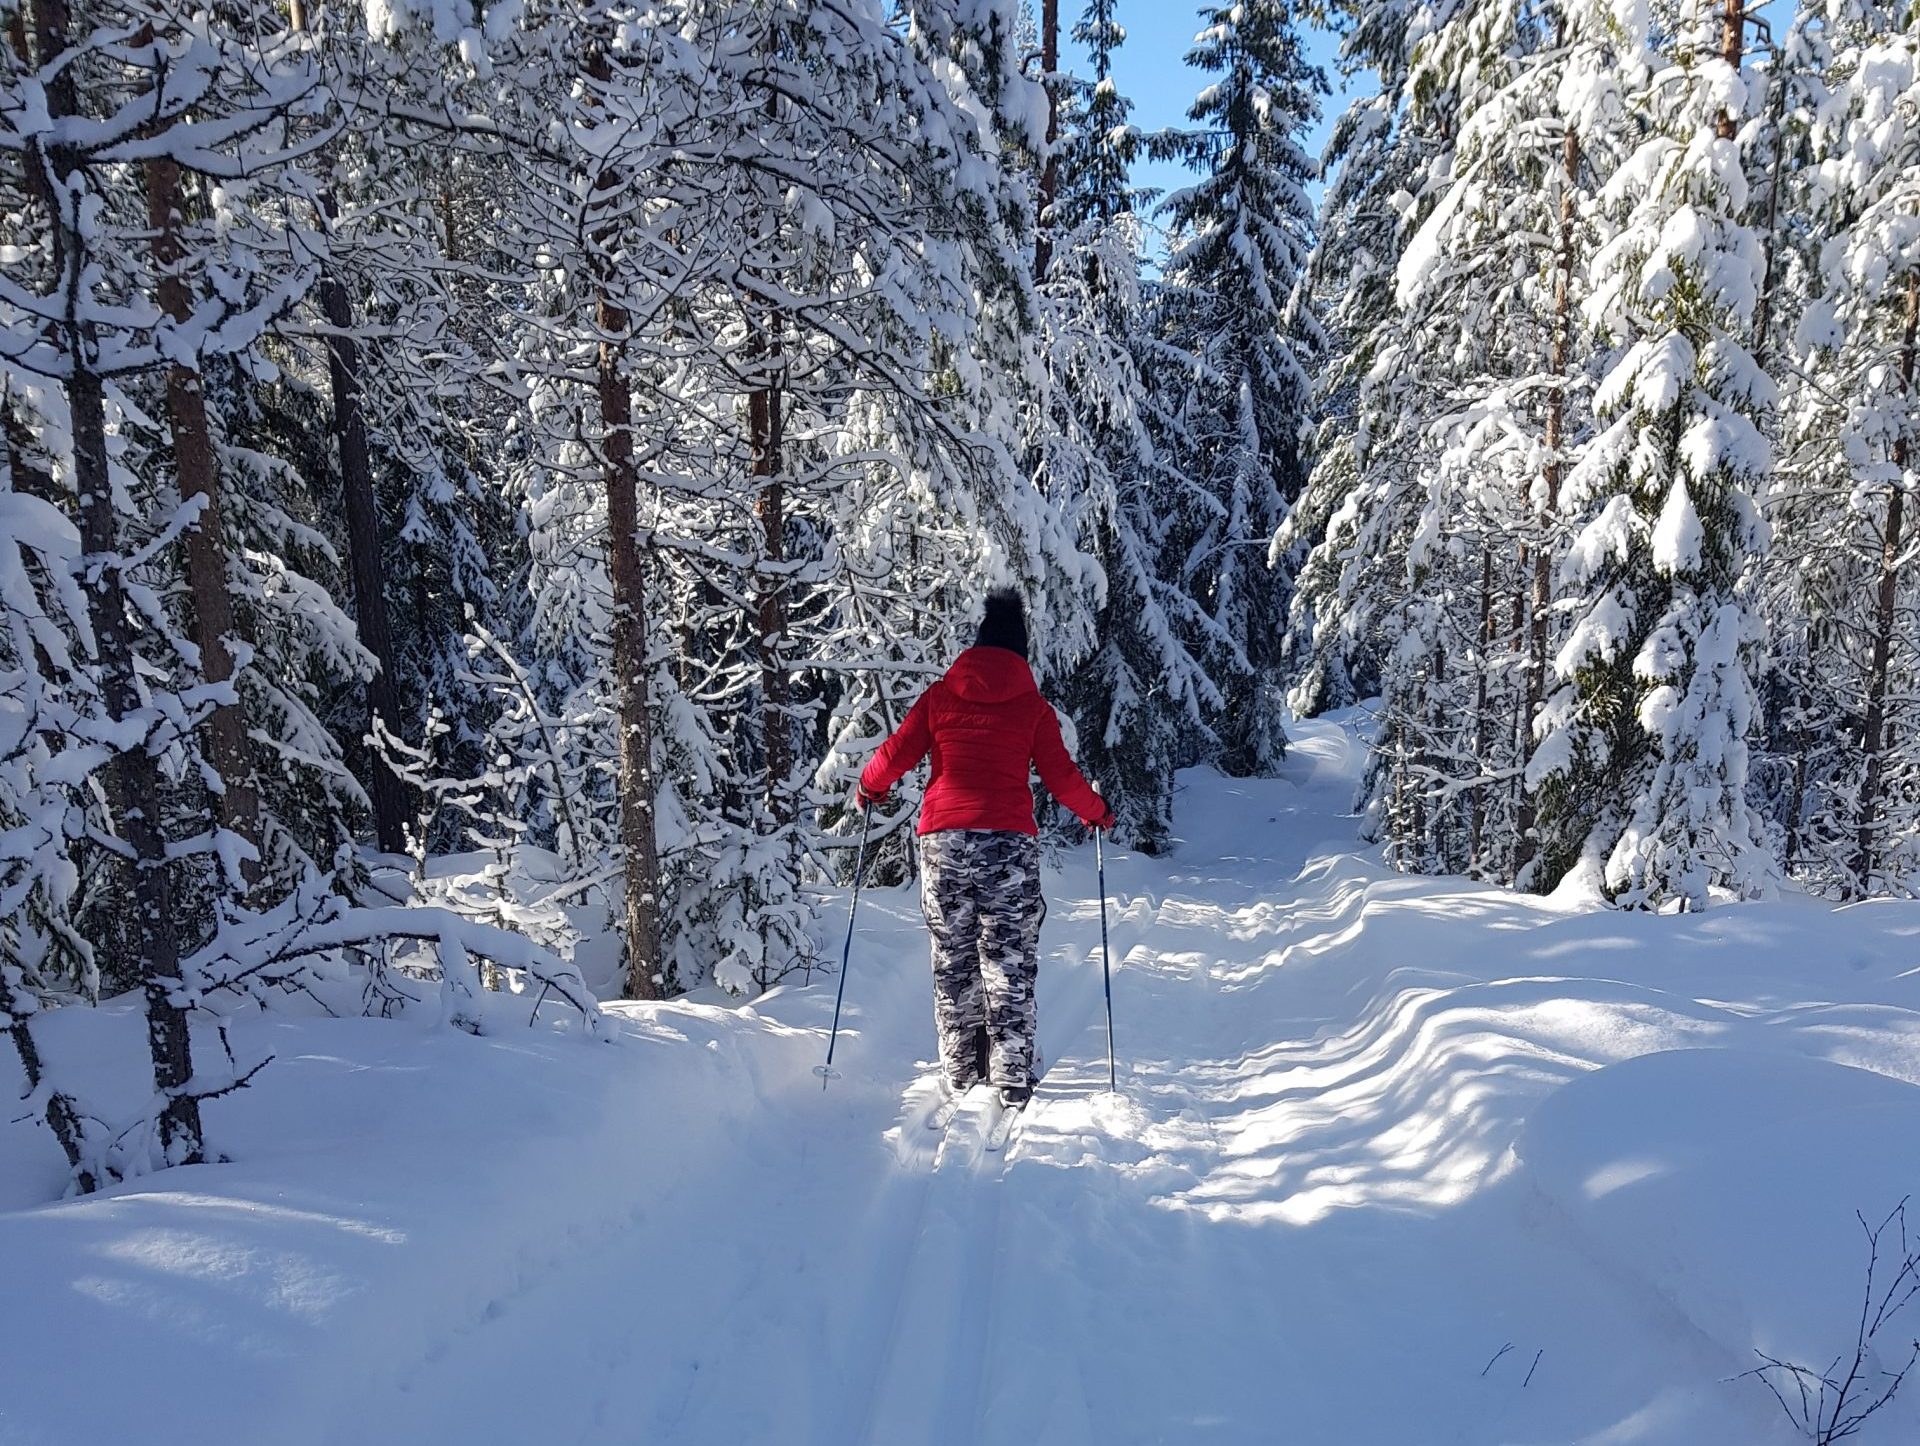 Austauschschülerin fährt Ski in einem schneebedeckten Wald in Norwegen